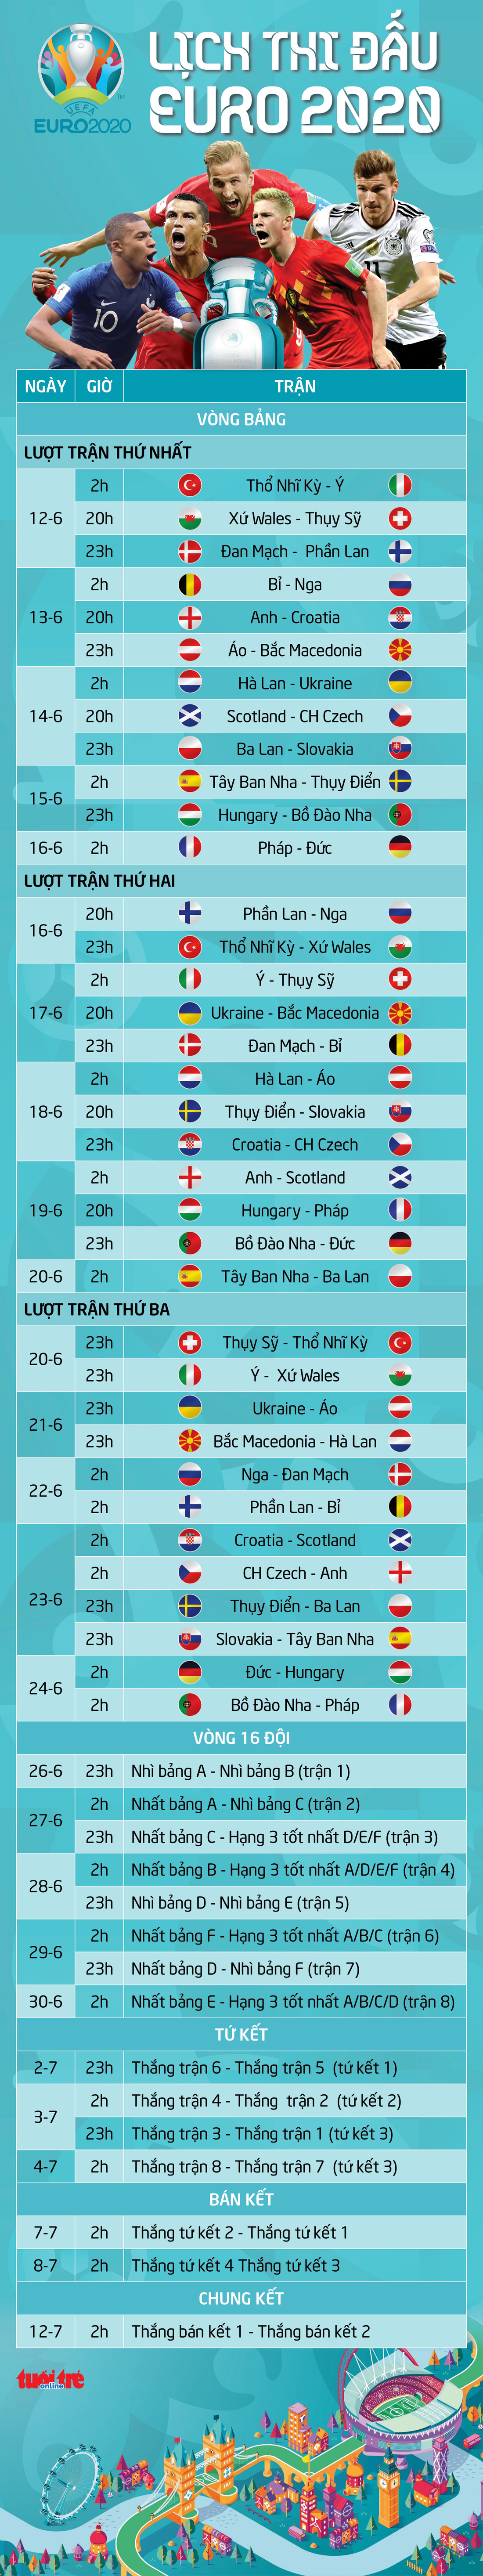 Lịch thi đấu 51 trận tại vòng chung kết Euro 2020 - Ảnh 1.